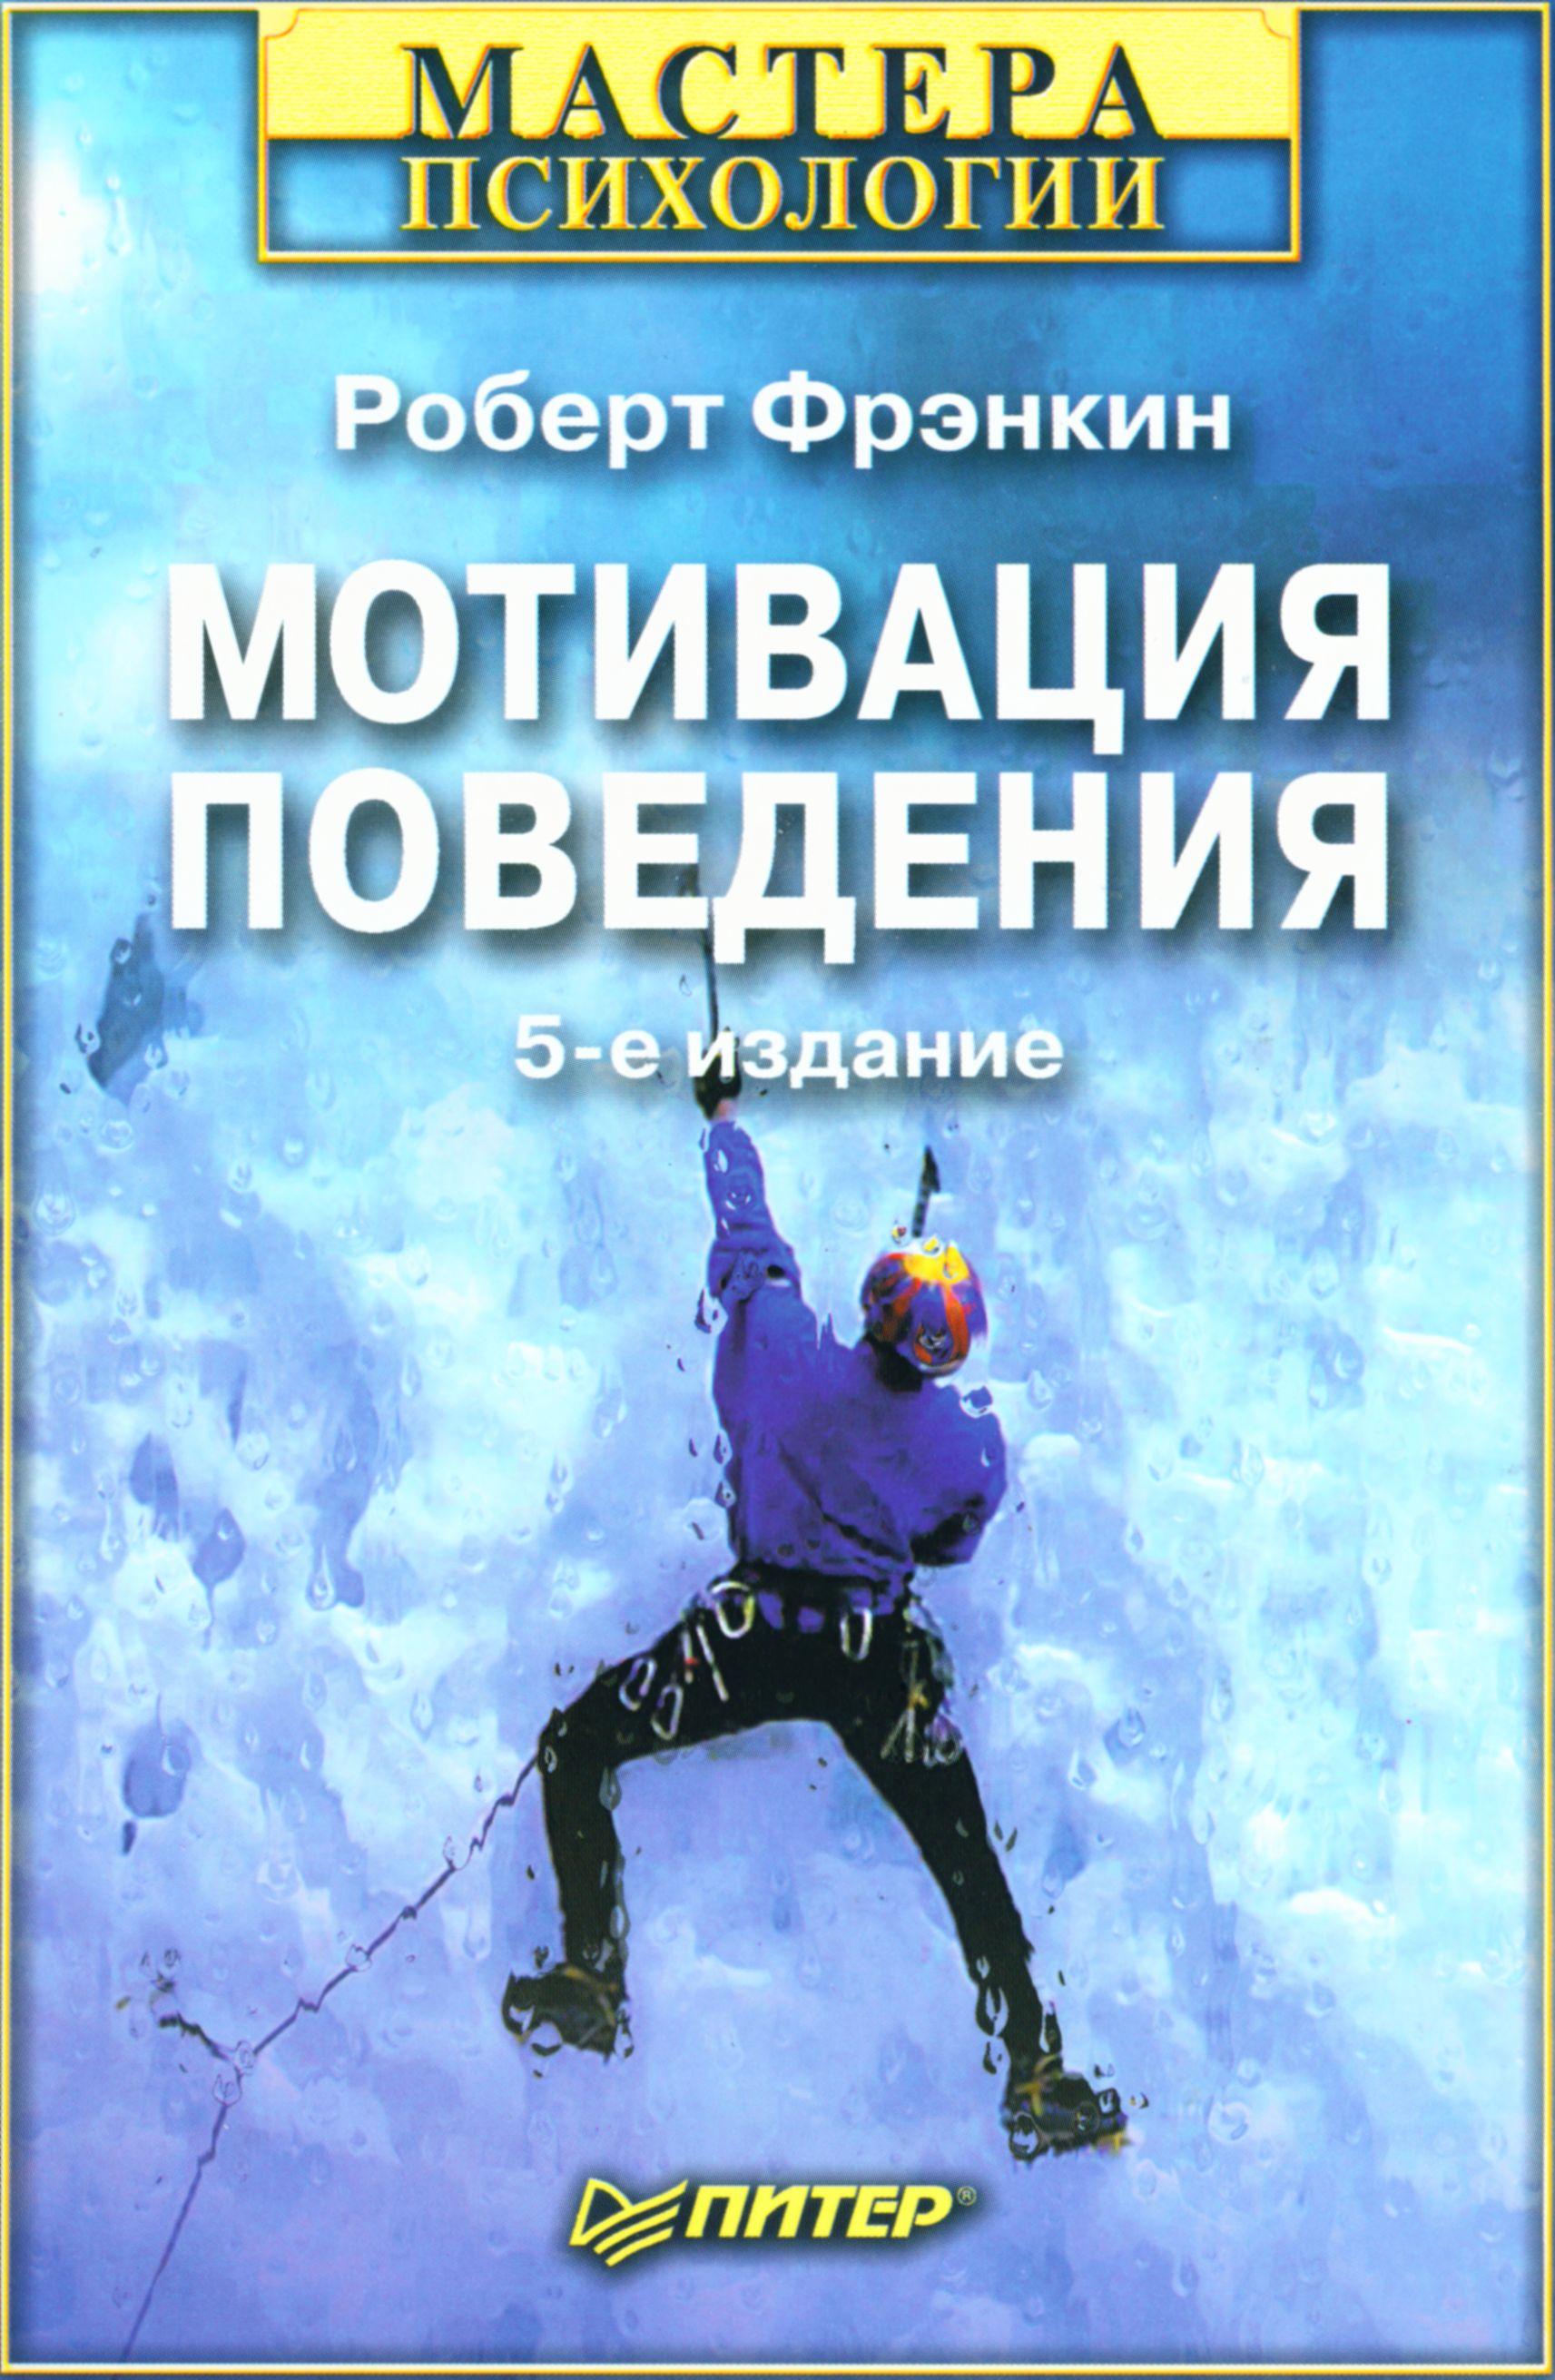 Обложка книги "Мотивация поведения (5-е издание)"